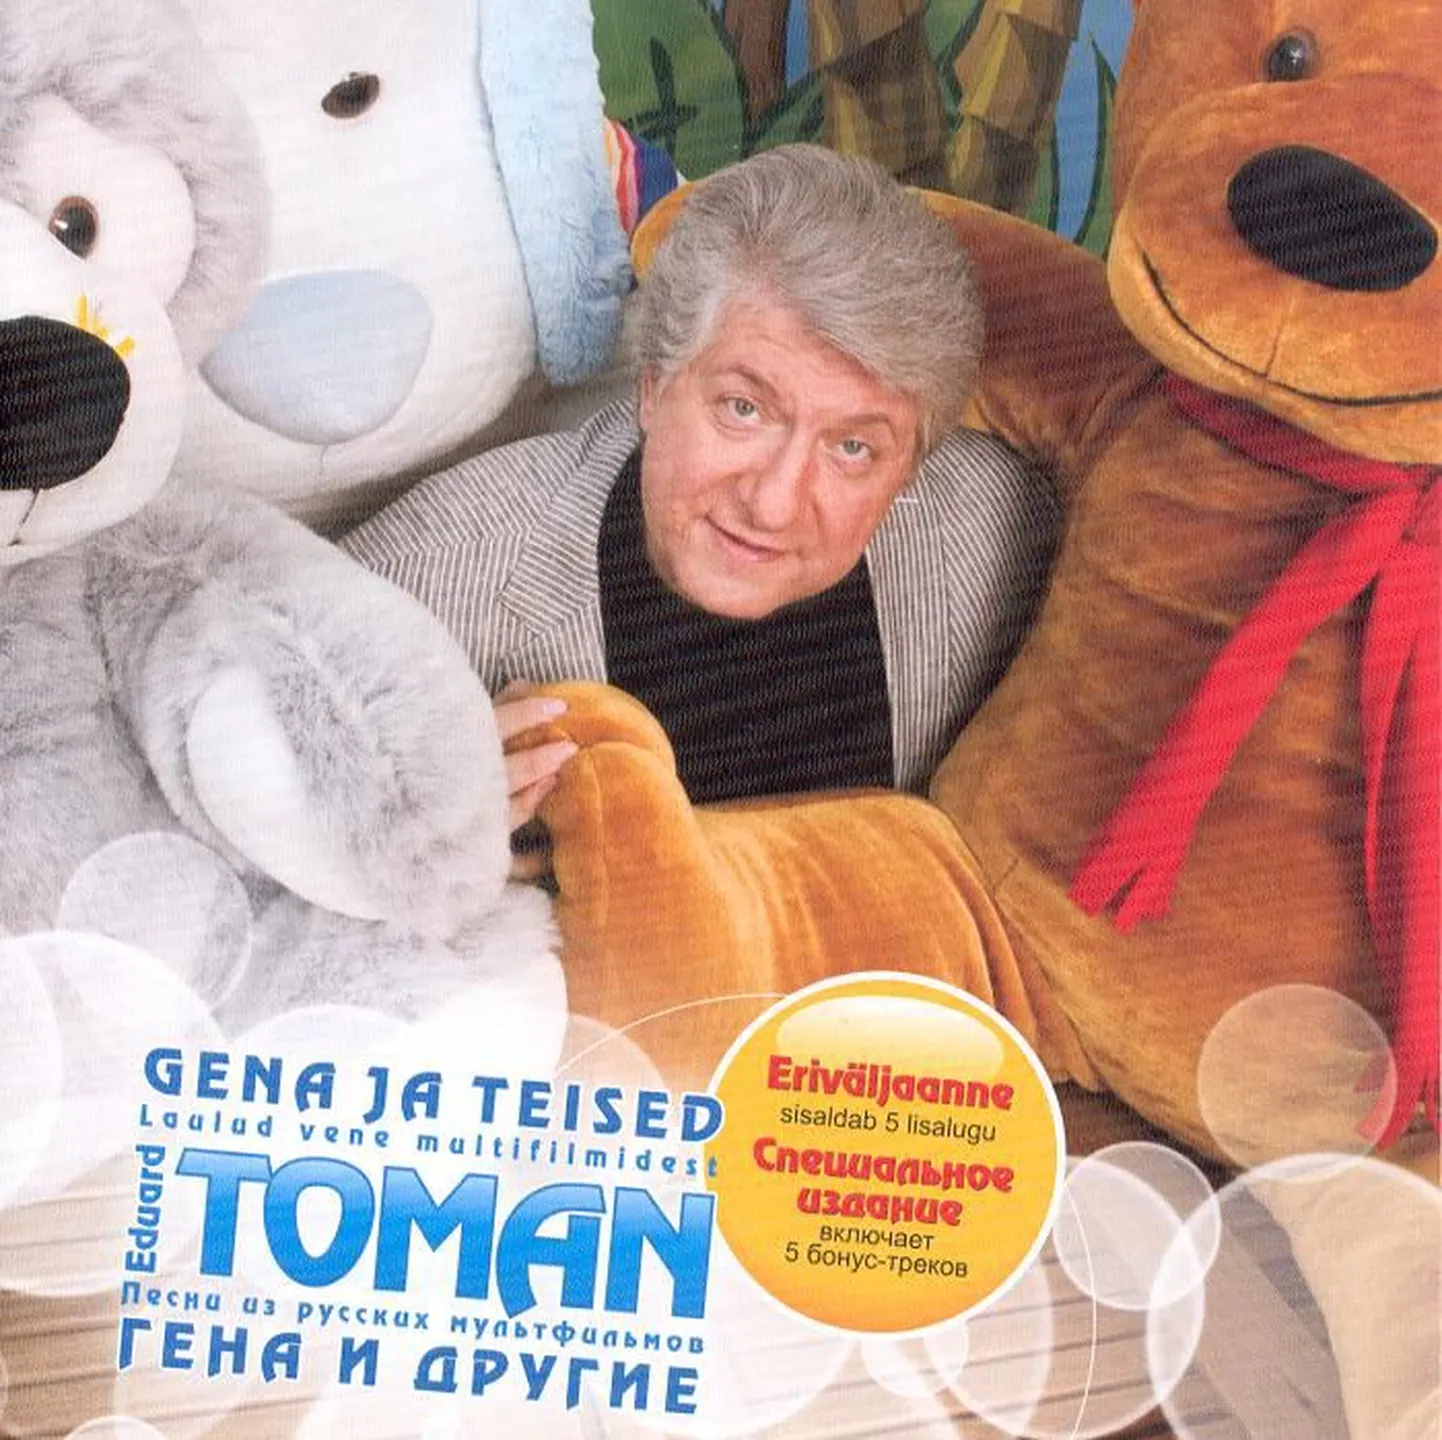 Eduard Toman “Gena ja teised laulud vene multifilmidest”.